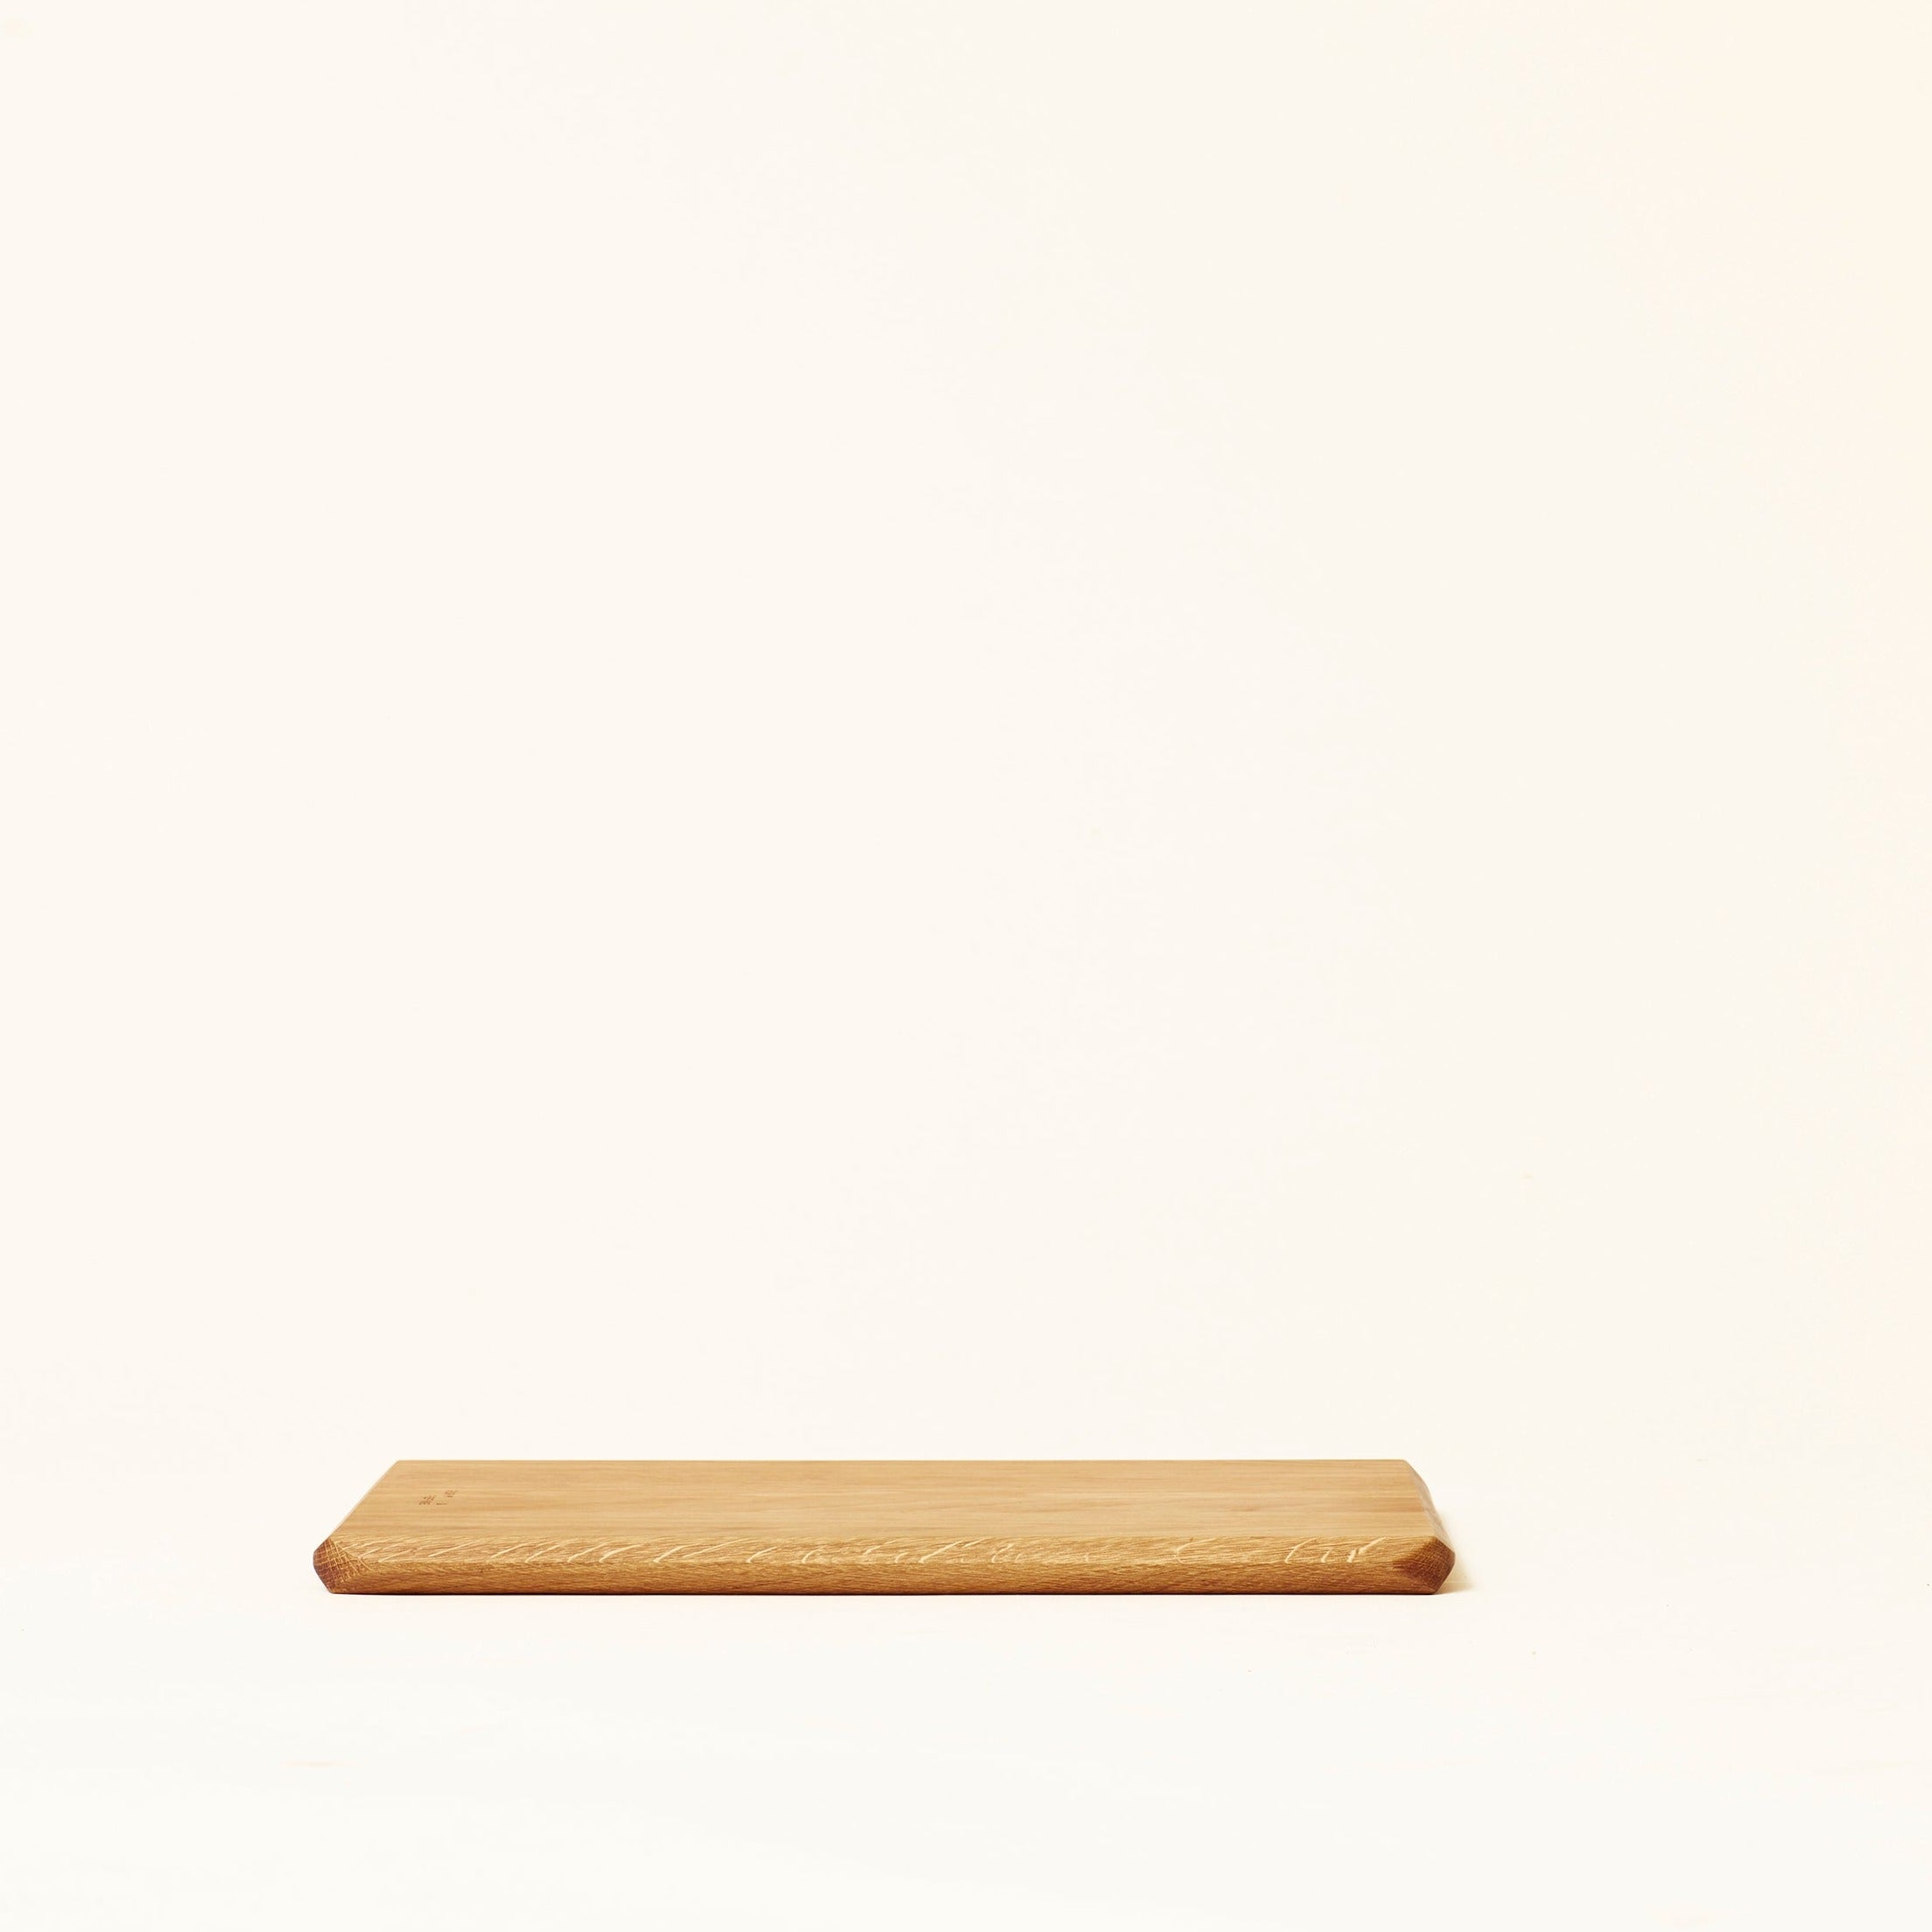 oak cutting board